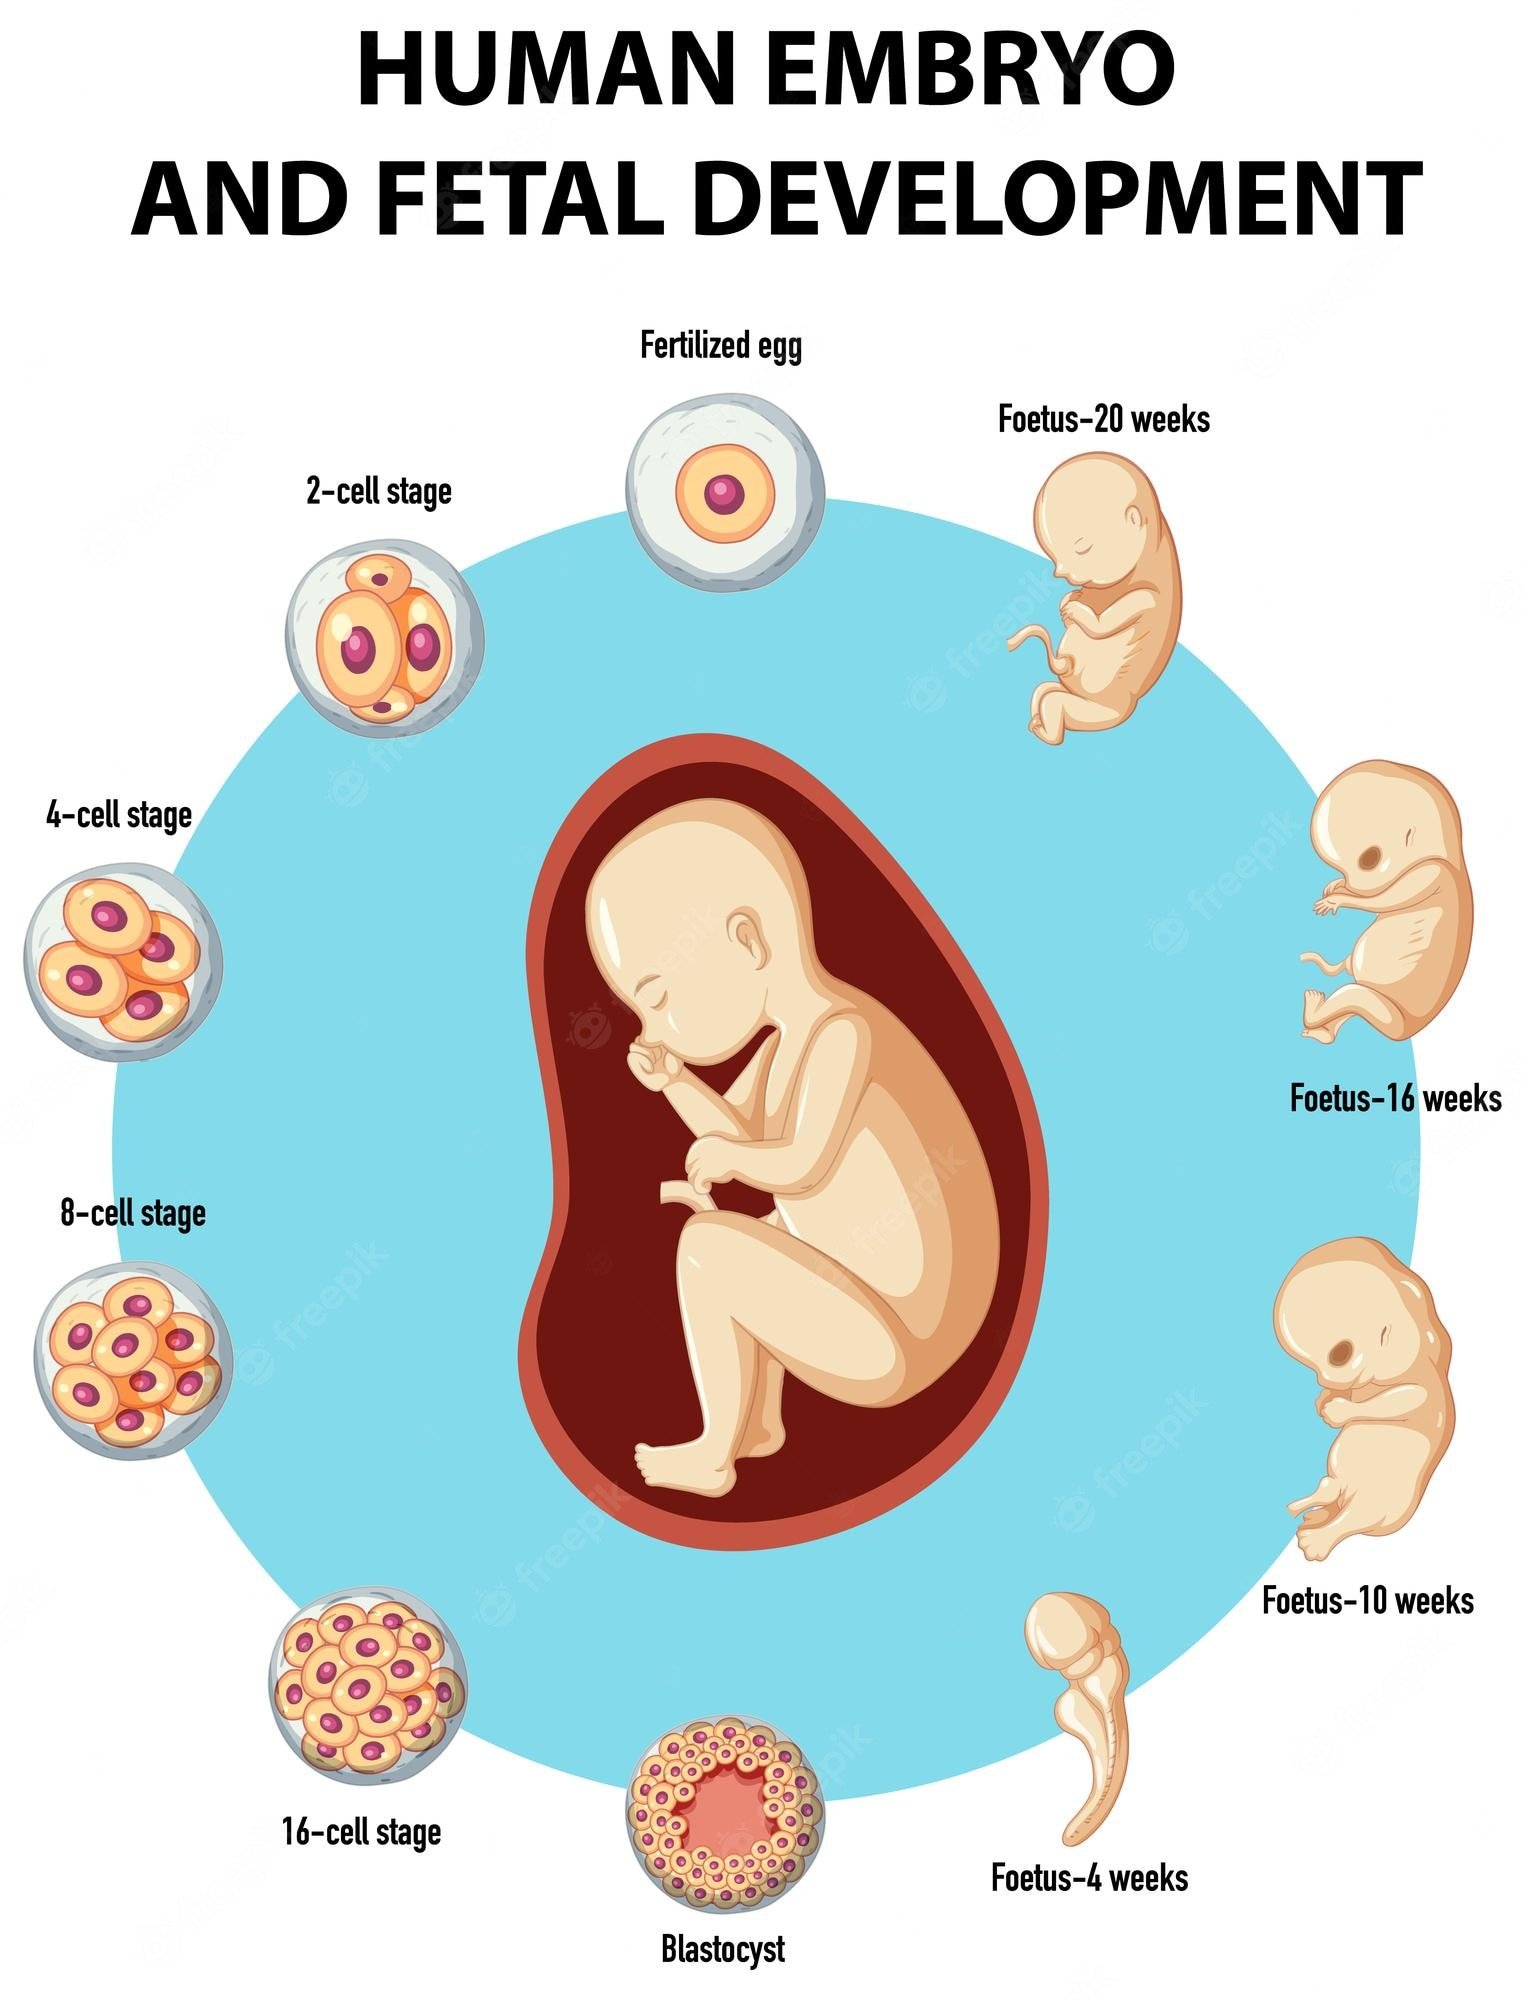 Embryo Image